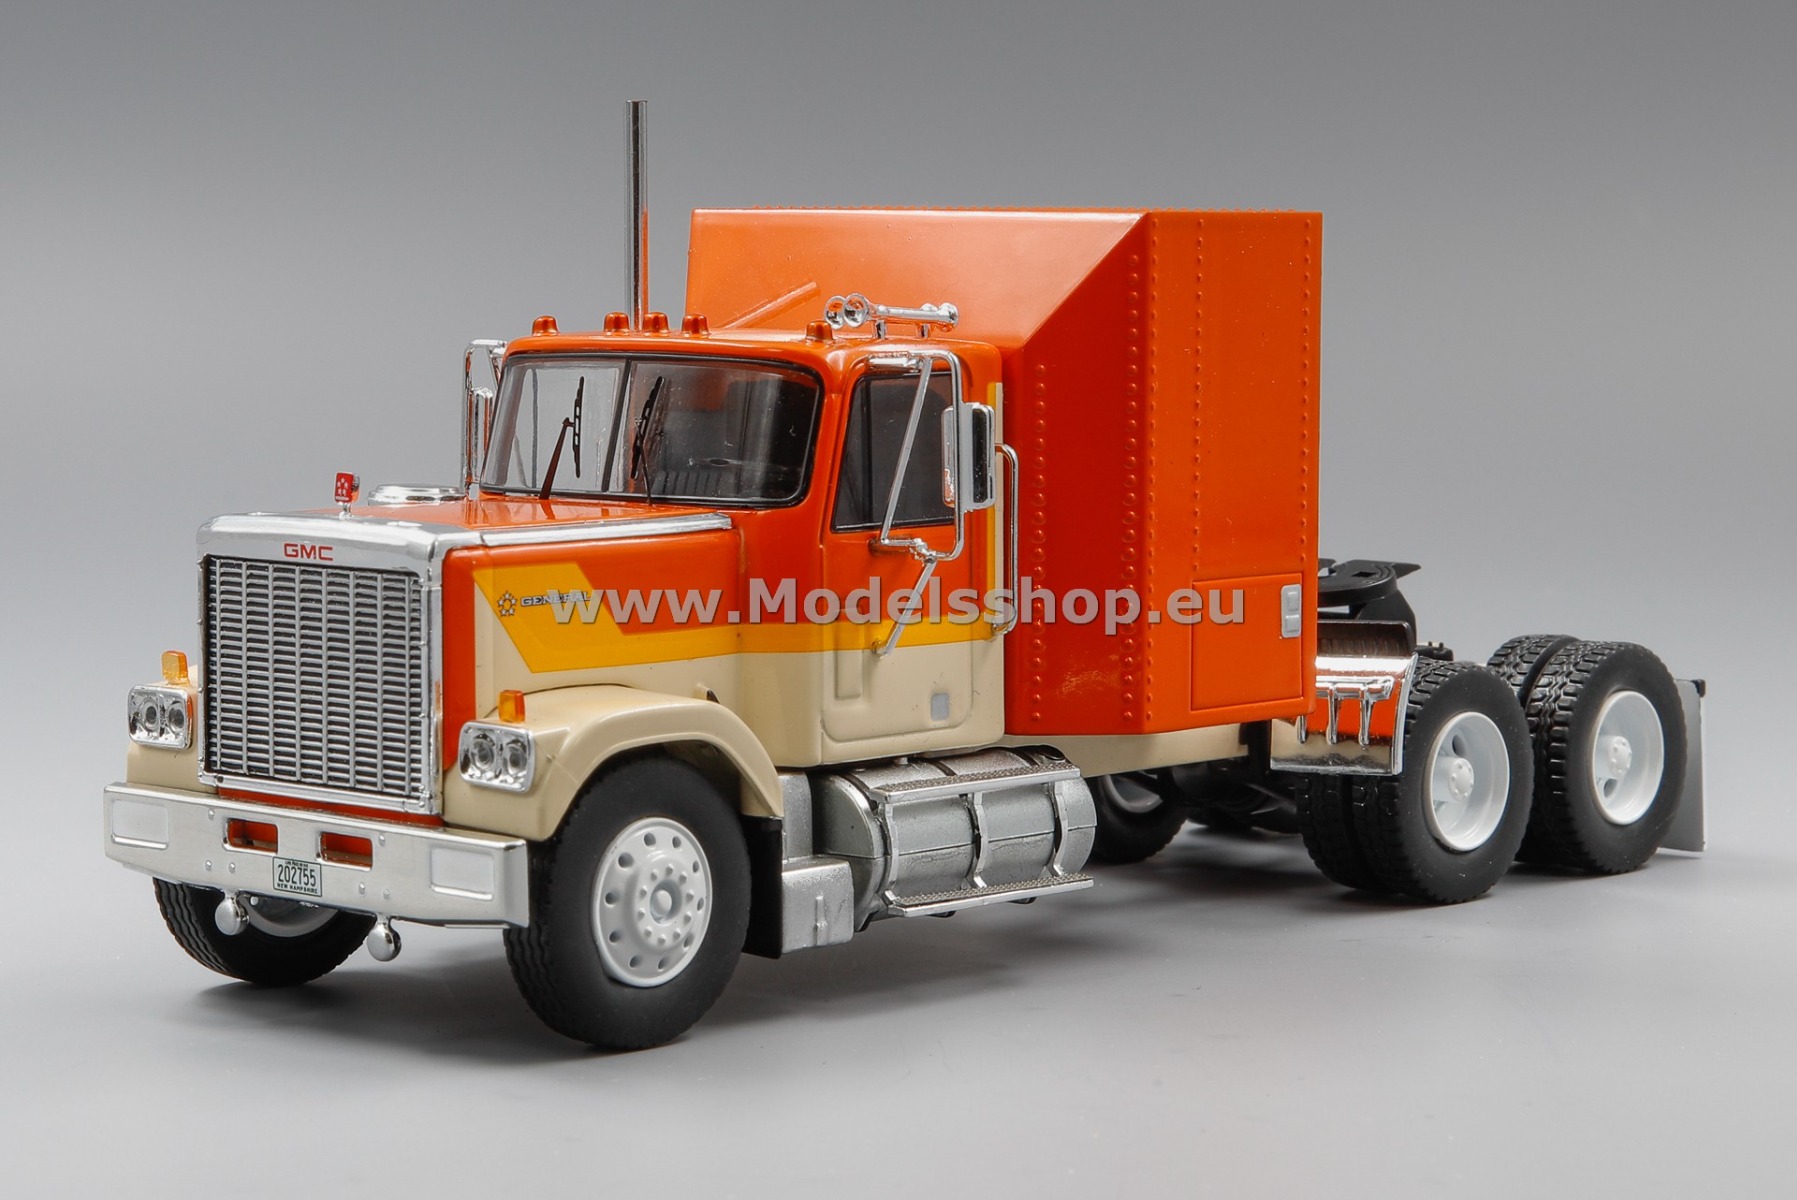 IXO TR129.22 GMC General tractor truck, 1980 /orange - beige/